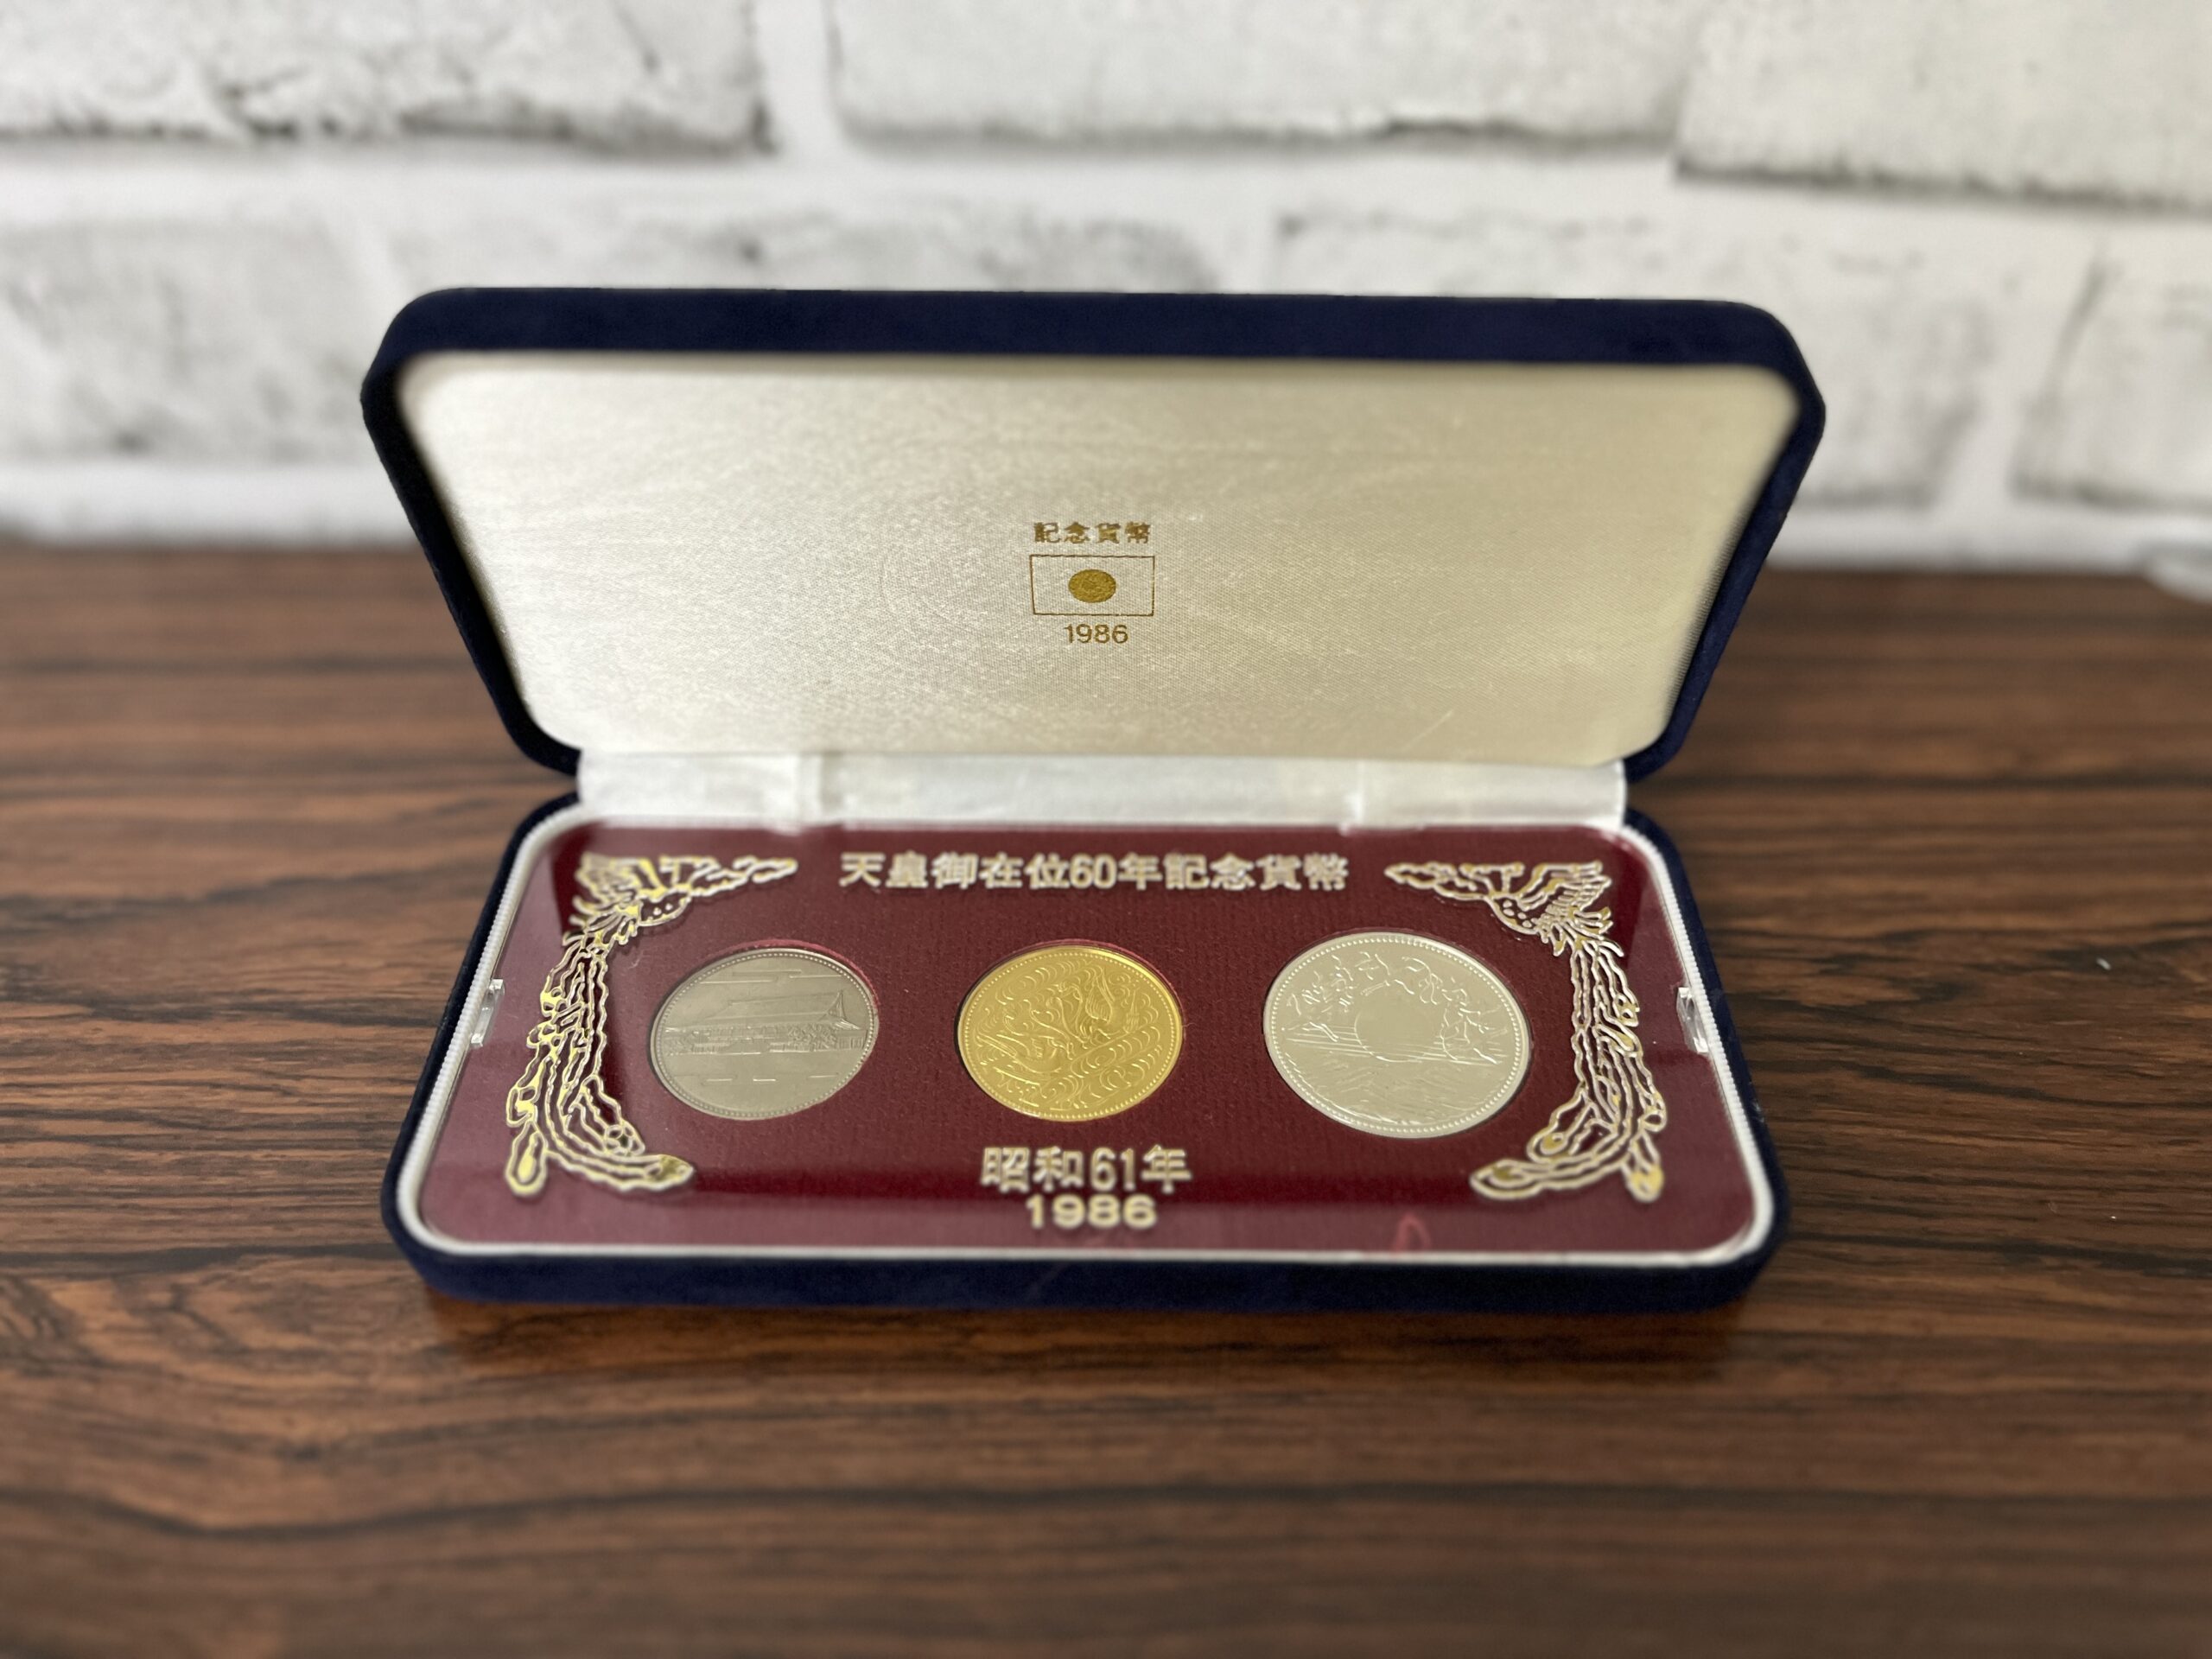 メール便無料 天皇陛下御在位60年記念 貨幣セット コレクション